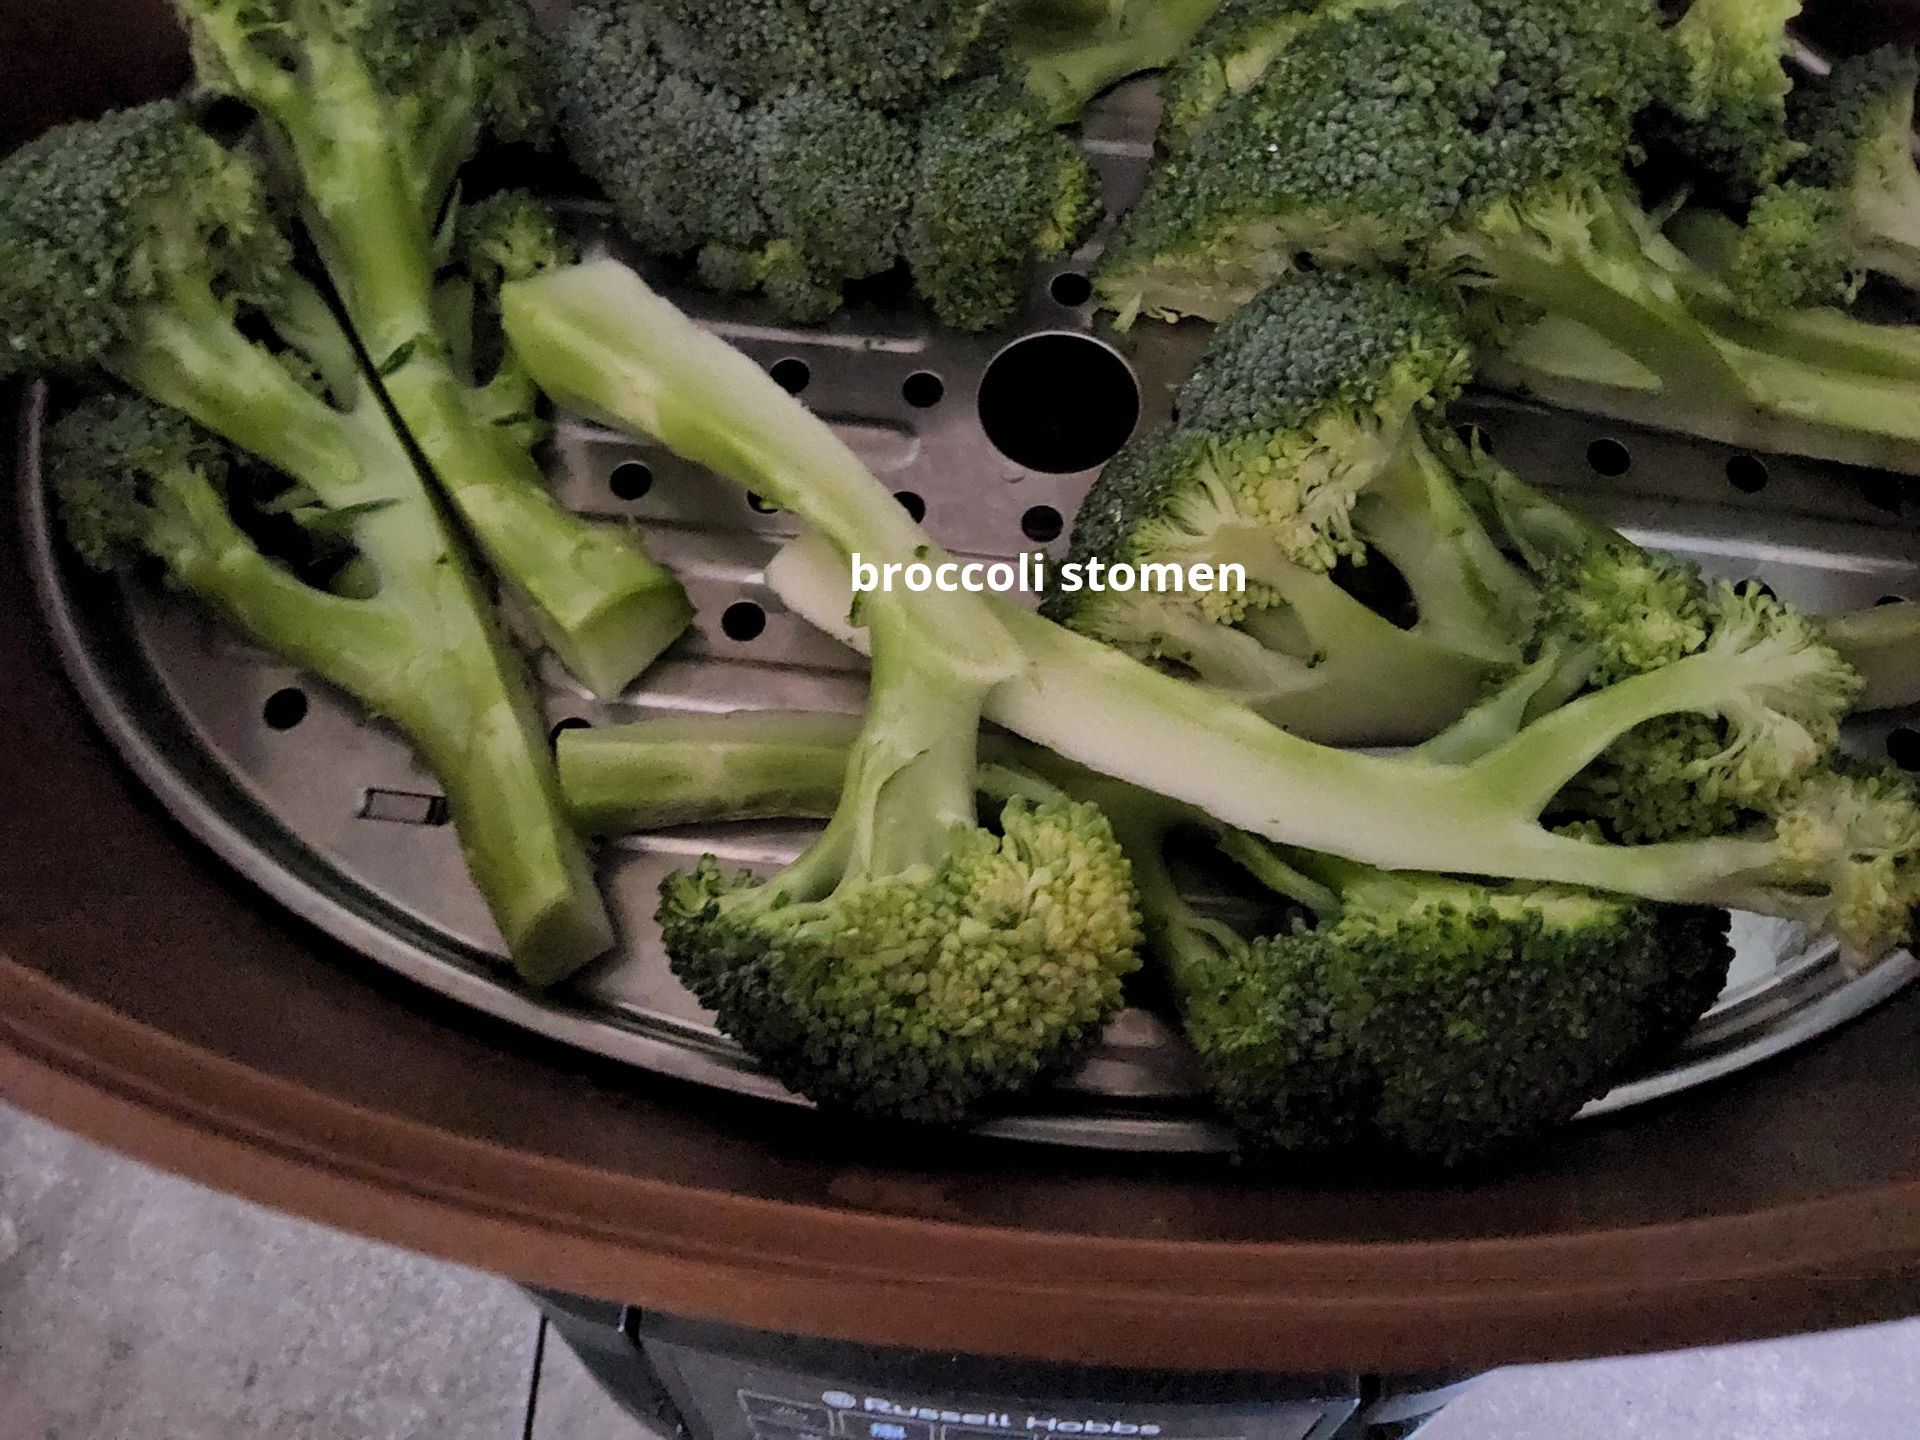 broccoli stomen in de gtg Russell Hobbs multicooker